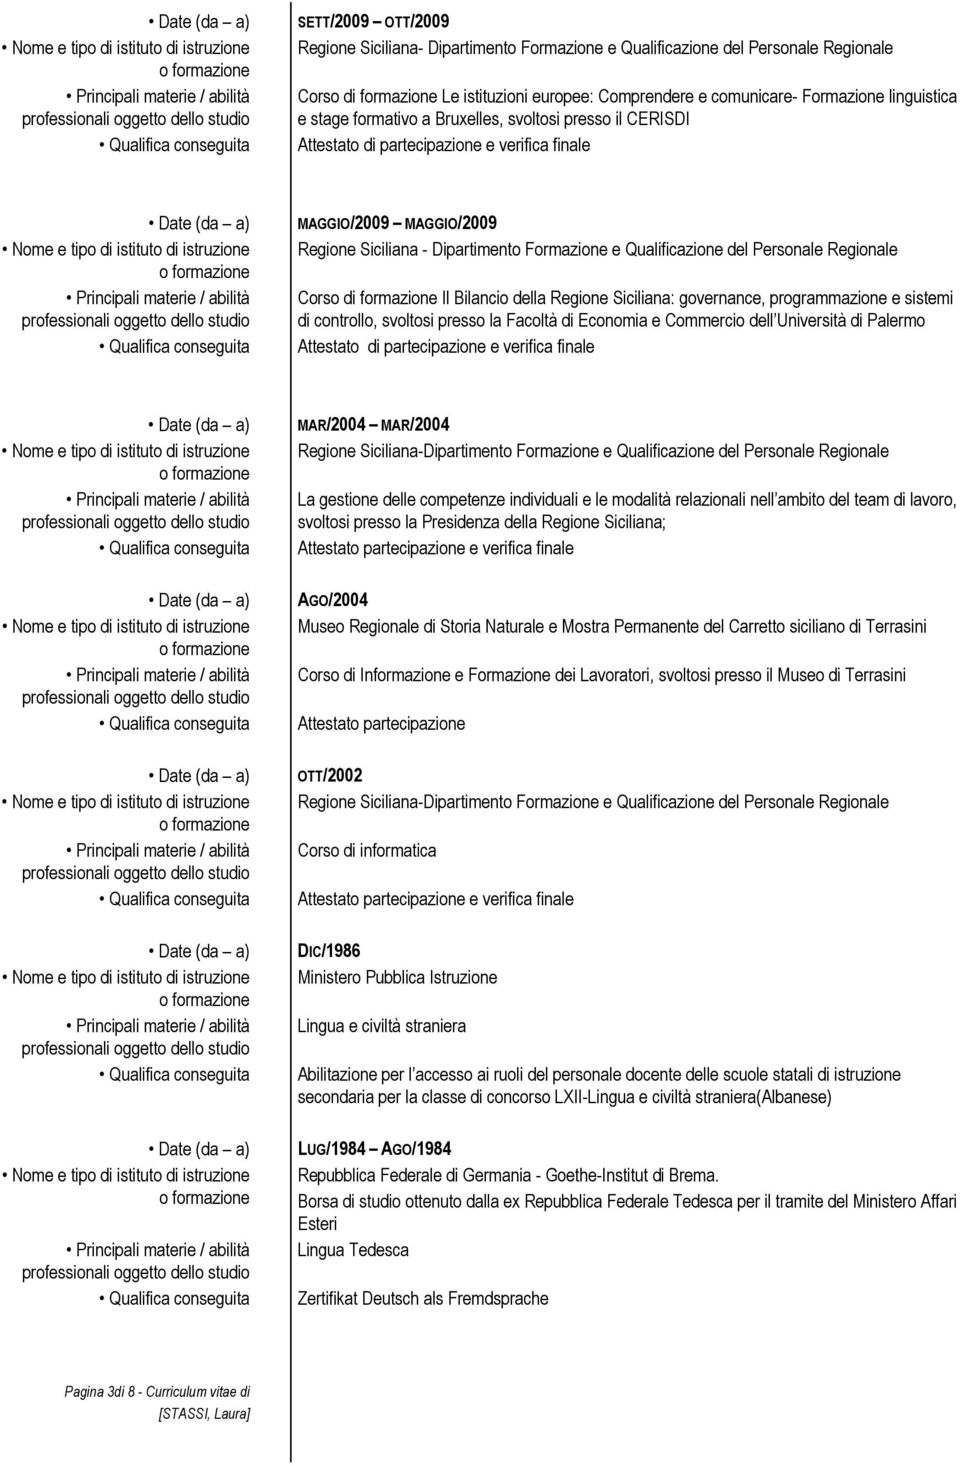 Personale Regionale Corso di formazione Il Bilancio della Regione Siciliana: governance, programmazione e sistemi di controllo, svoltosi presso la Facoltà di Economia e Commercio dell Università di